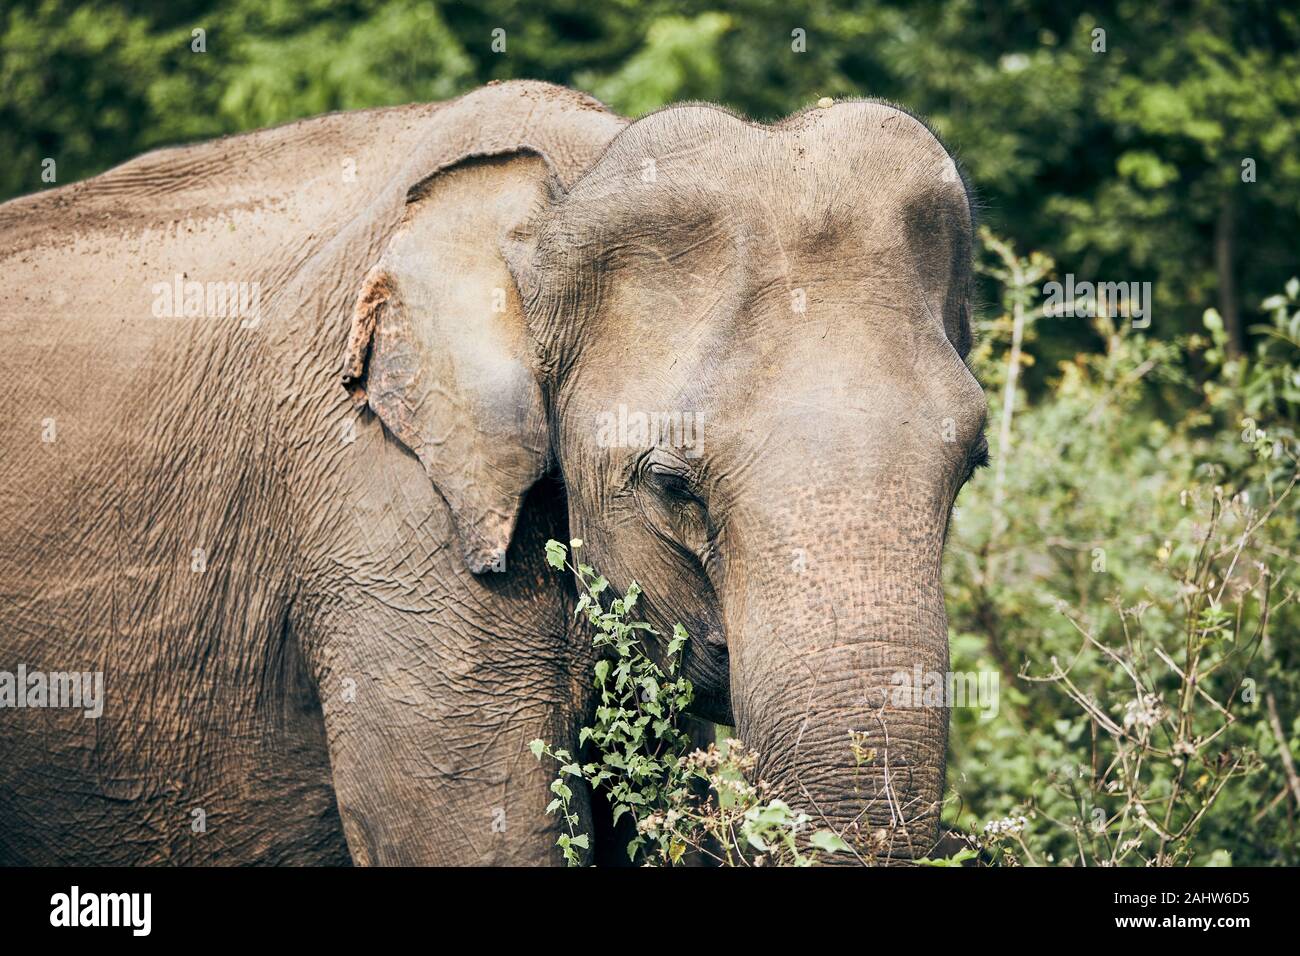 Portrait of elephant in jungle. Wildlife animal in Sri Lanka. Stock Photo